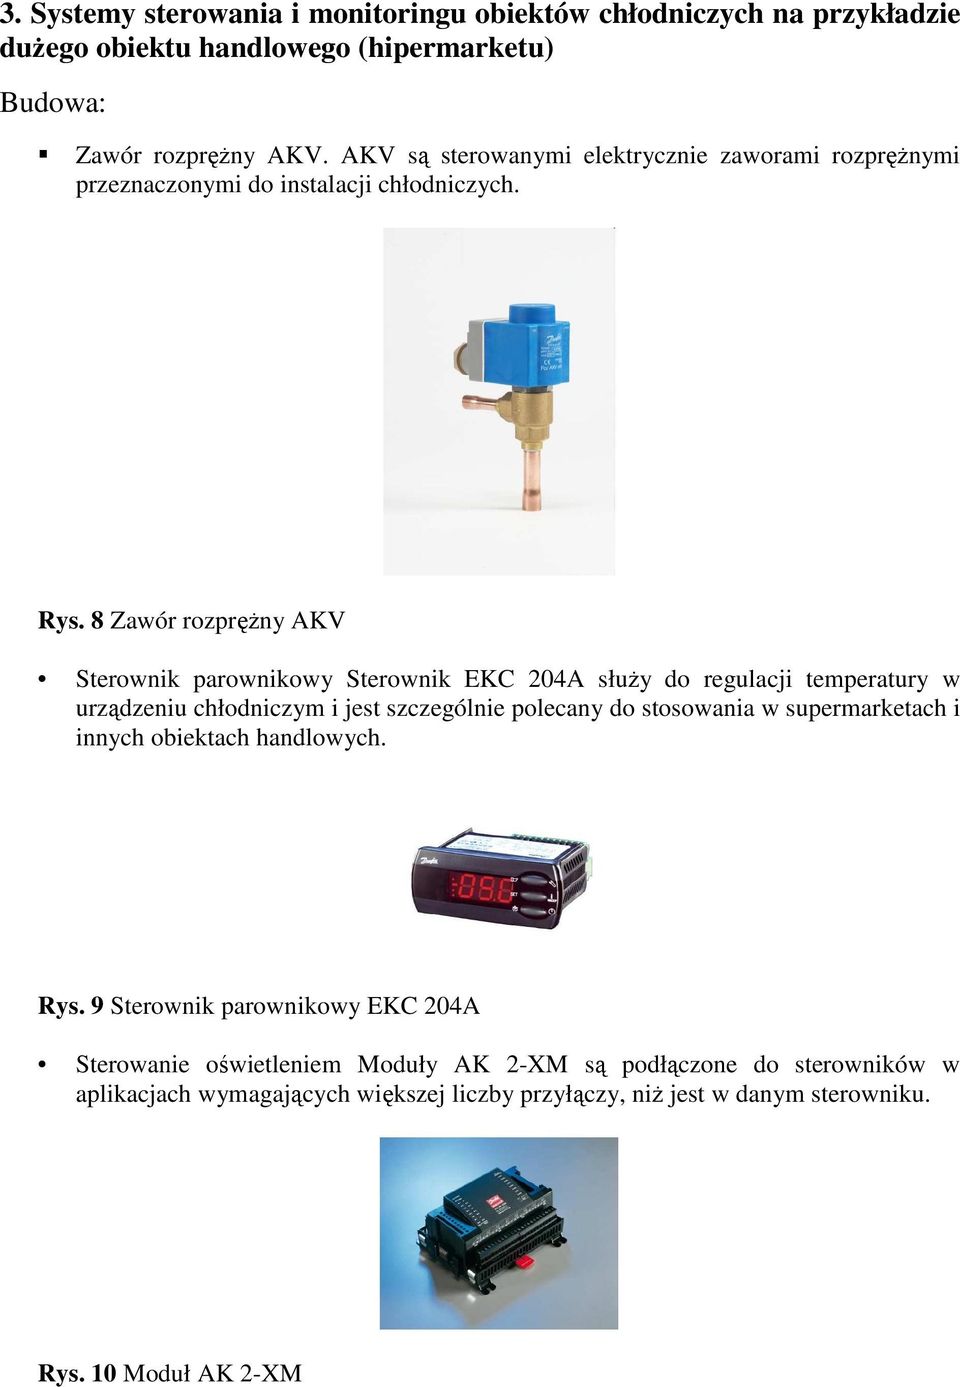 8 Zawór rozpręŝny AKV Sterownik parownikowy Sterownik EKC 204A słuŝy do regulacji temperatury w urządzeniu chłodniczym i jest szczególnie polecany do stosowania w